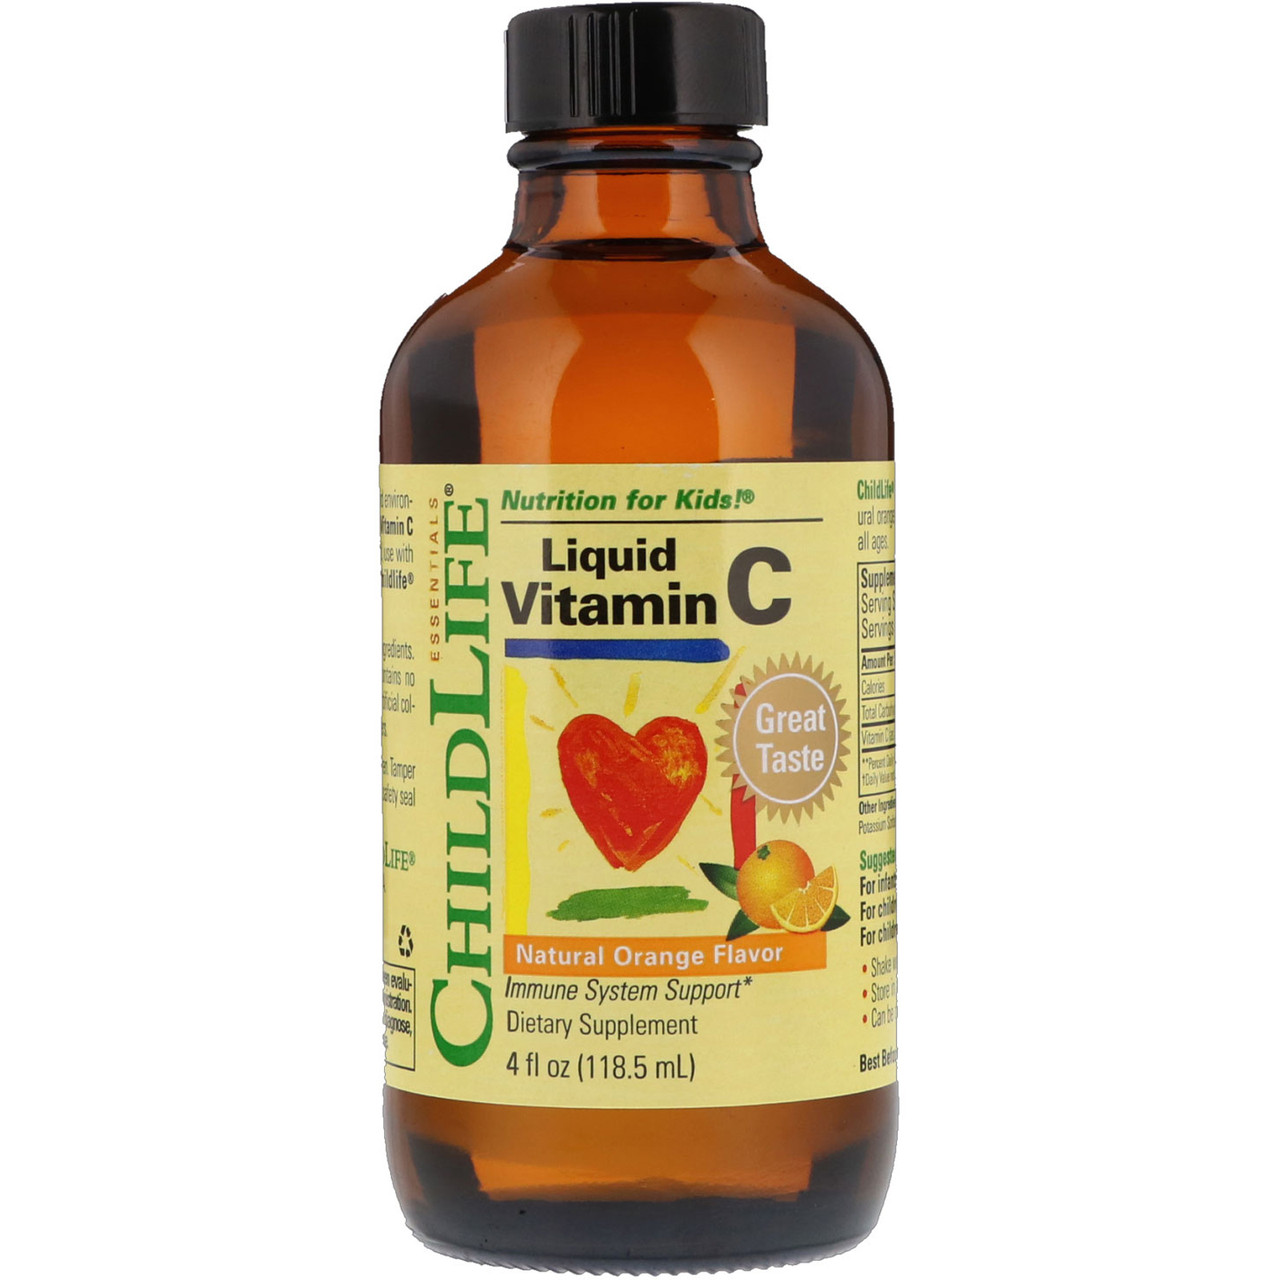 Вітамін С для дітей рідкий, ChildLife Liquid Vitamin C, 118,5 мл